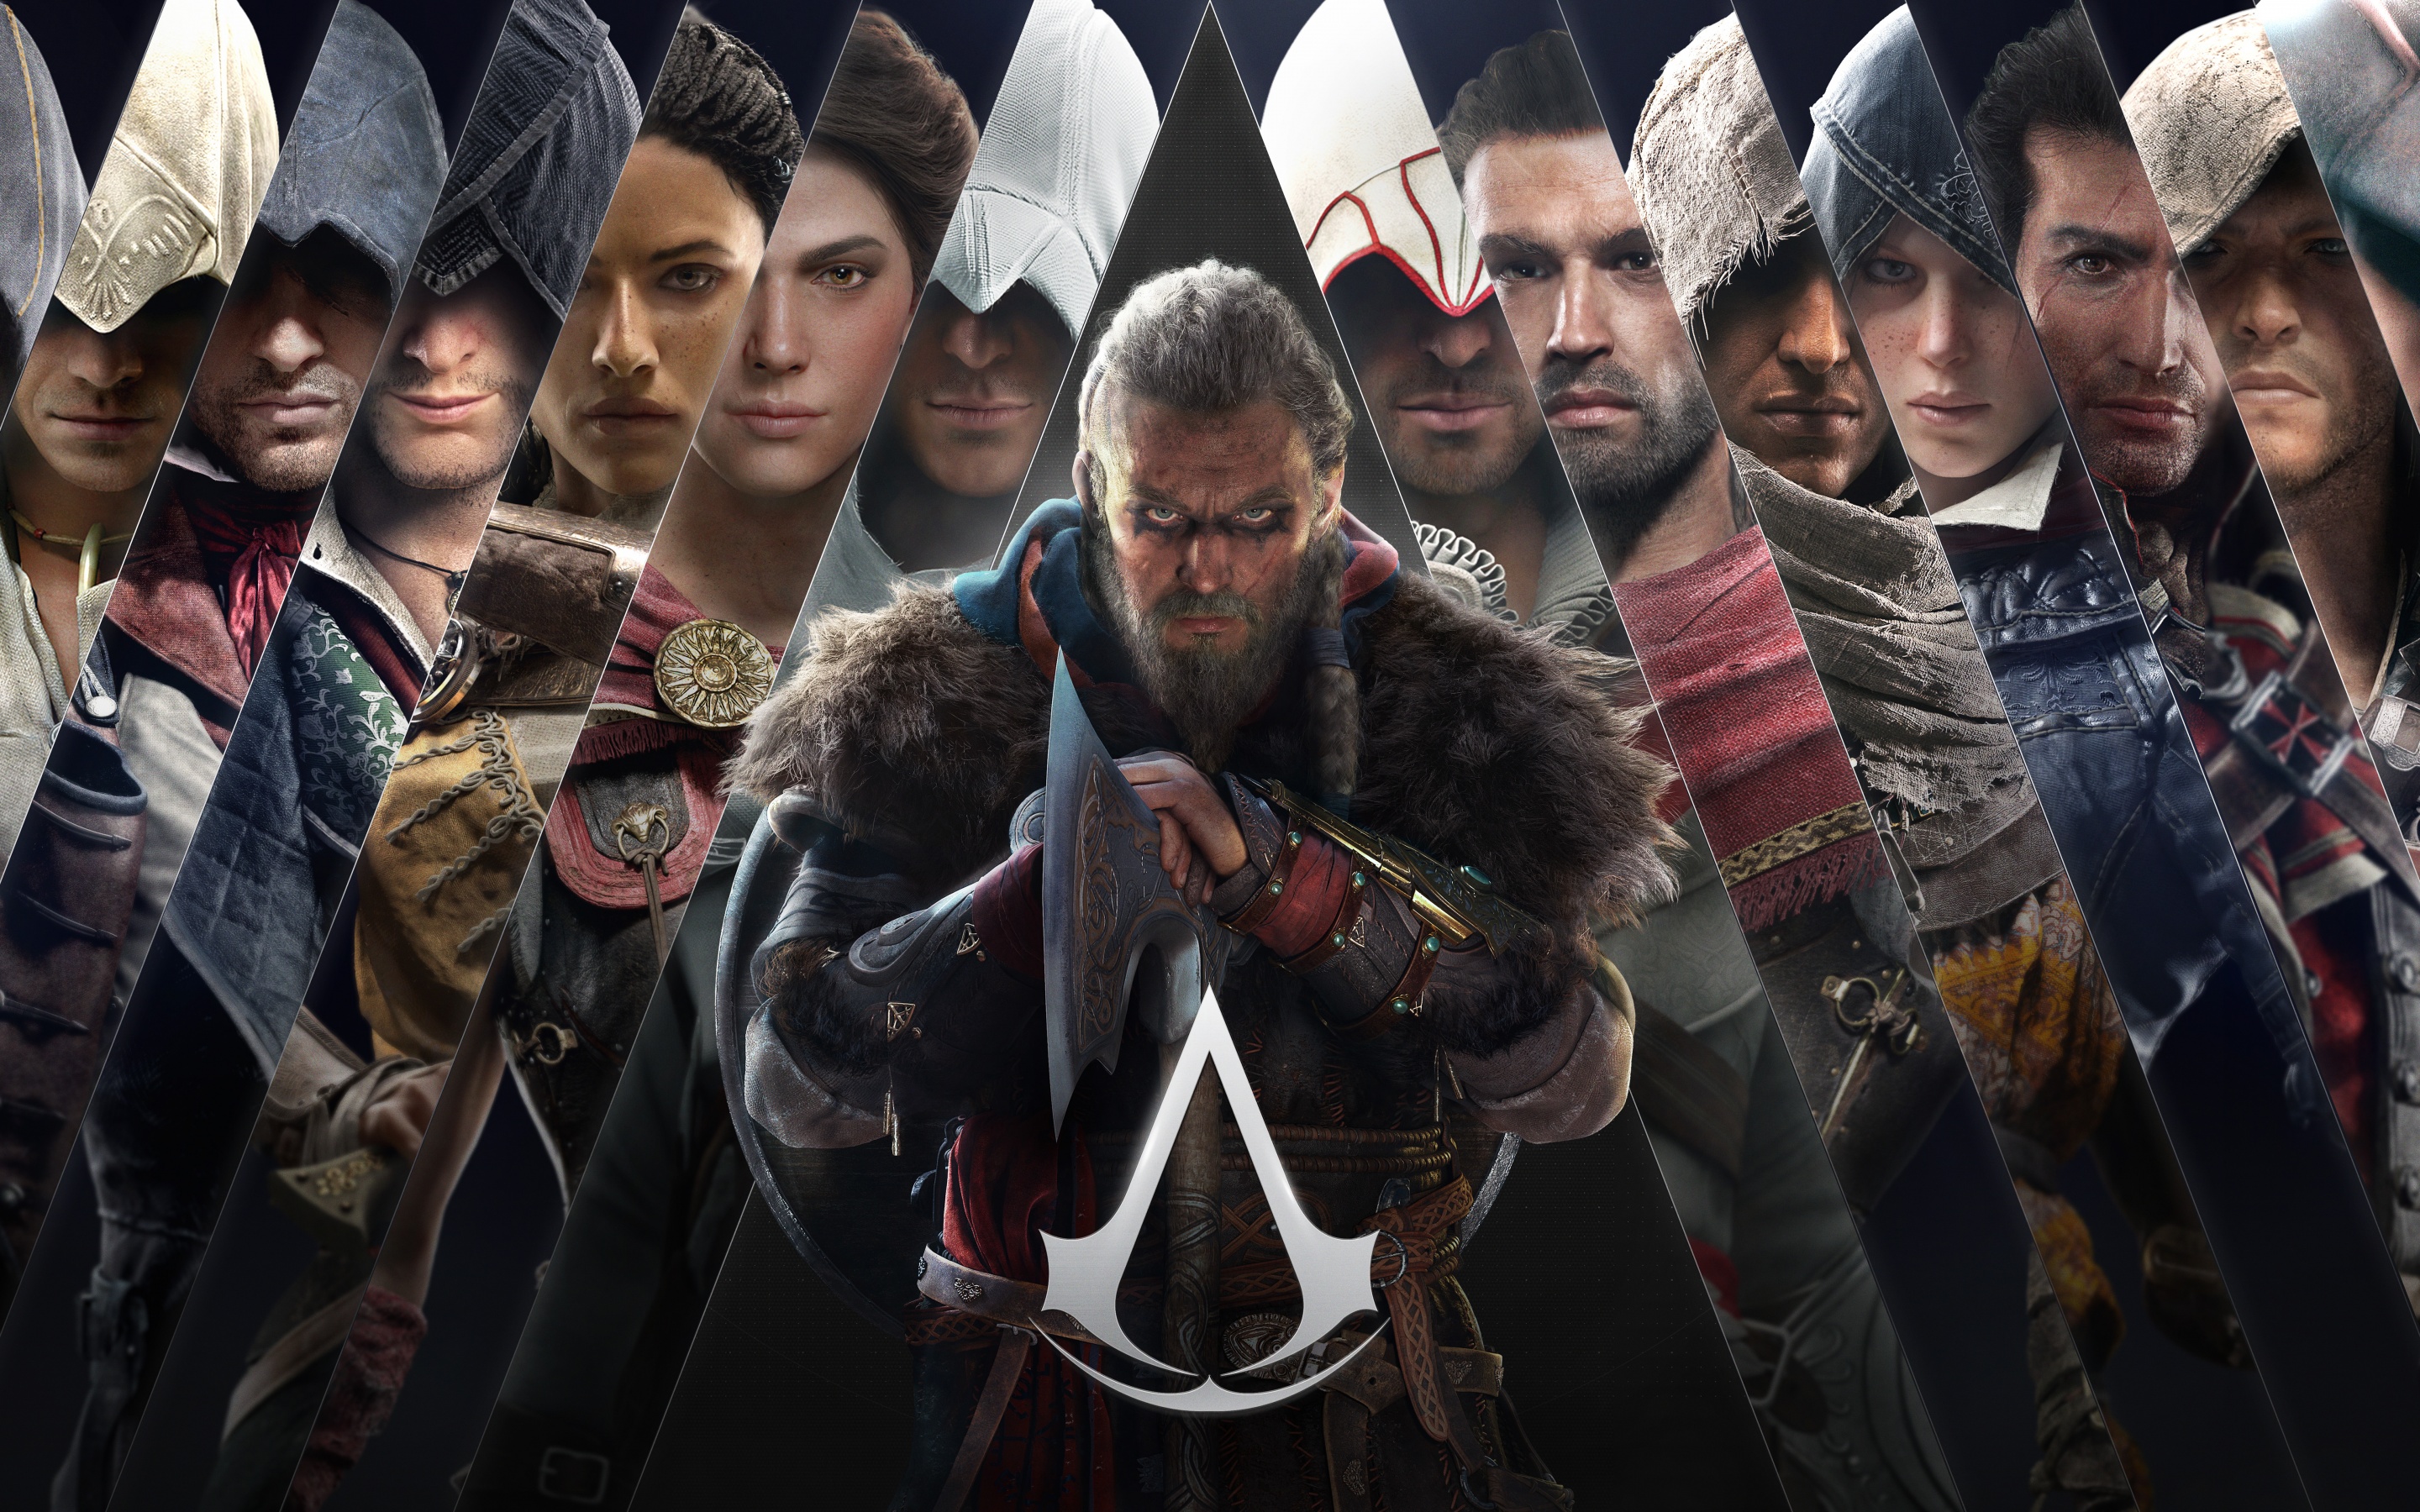 Hình nền Assassin\'s Creed Valhalla đem lại cho bạn cảm giác phiêu lưu và chiến đấu vô cùng hồi hộp và đầy hấp dẫn. Với những chi tiết tinh tế và đẹp mắt, bảo đảm bạn sẽ không thể chối từ được nó. Hãy thưởng thức bộ ảnh đầy màu sắc này ngay.